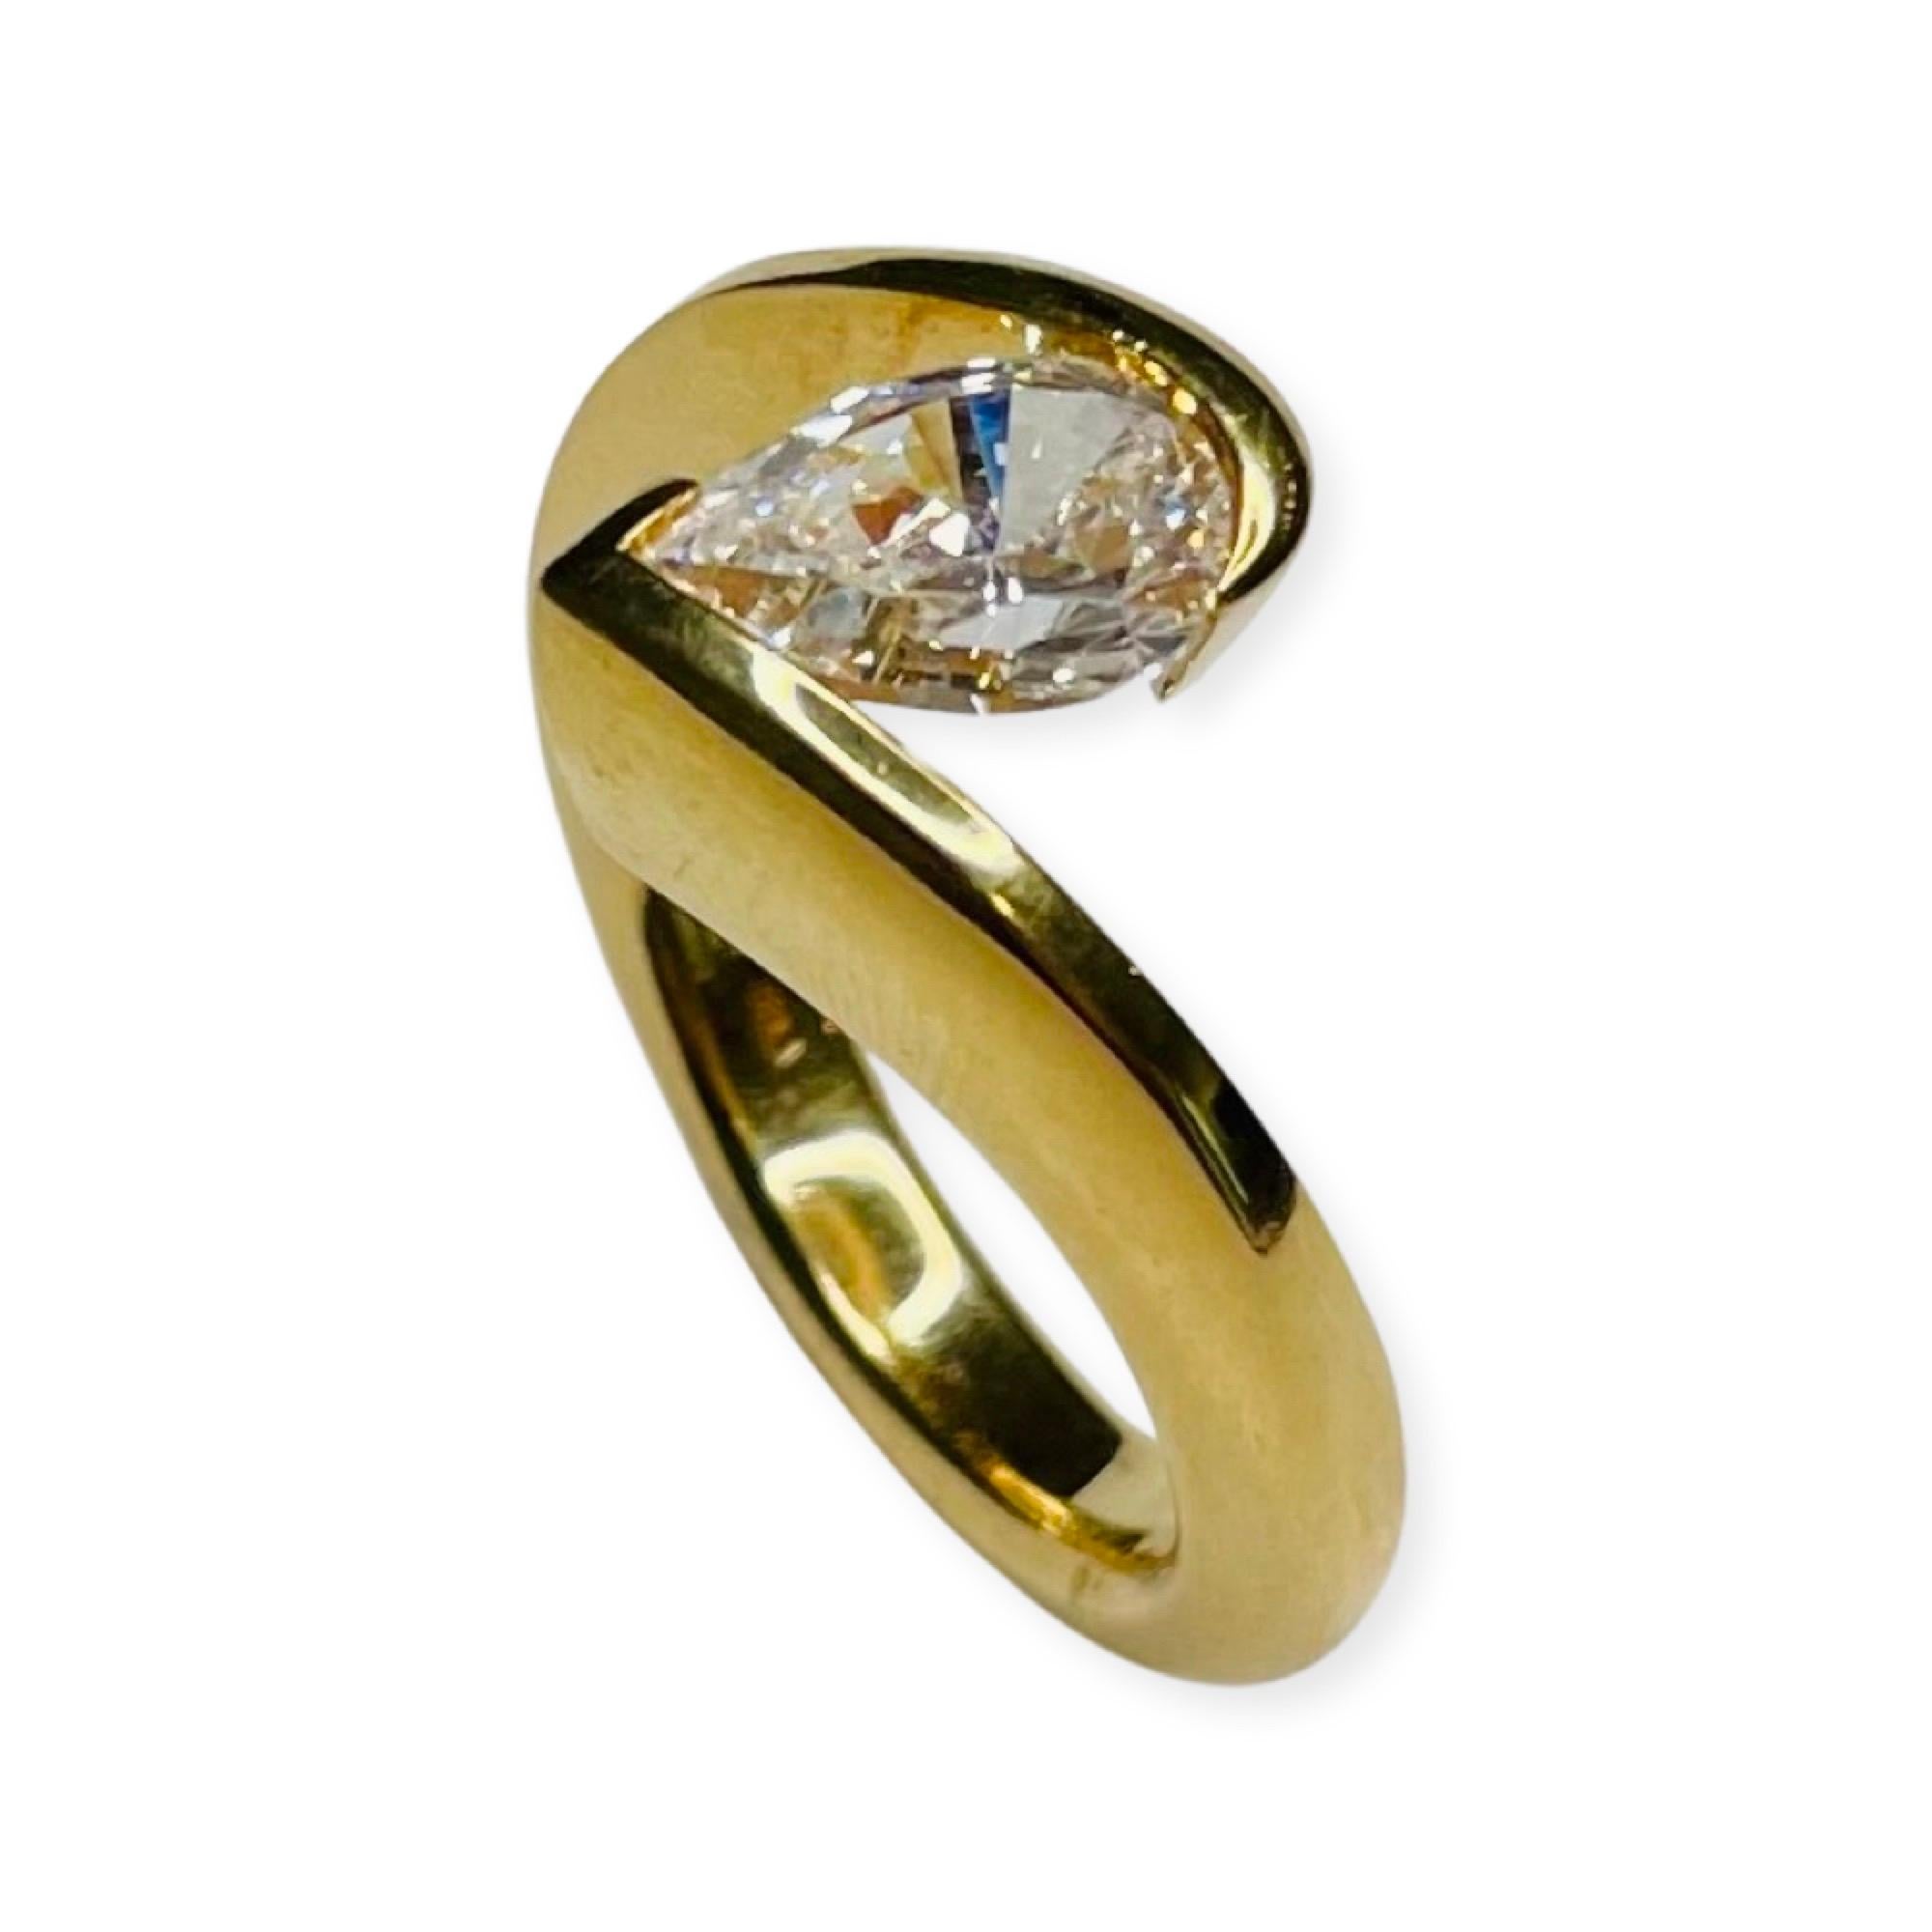 Steven Kretchmer 18K Gelb Birnenförmiger CZ Ring mit Spannungsverhältnis. Der Ring ist für einen Diamanten von 1,5 Karat ausgelegt.  Es ist gestempelt Pt950 c 1990 USA.  Das Dreieck mit den Kometenschwänzen an den Spitzen ist das Markenzeichen von